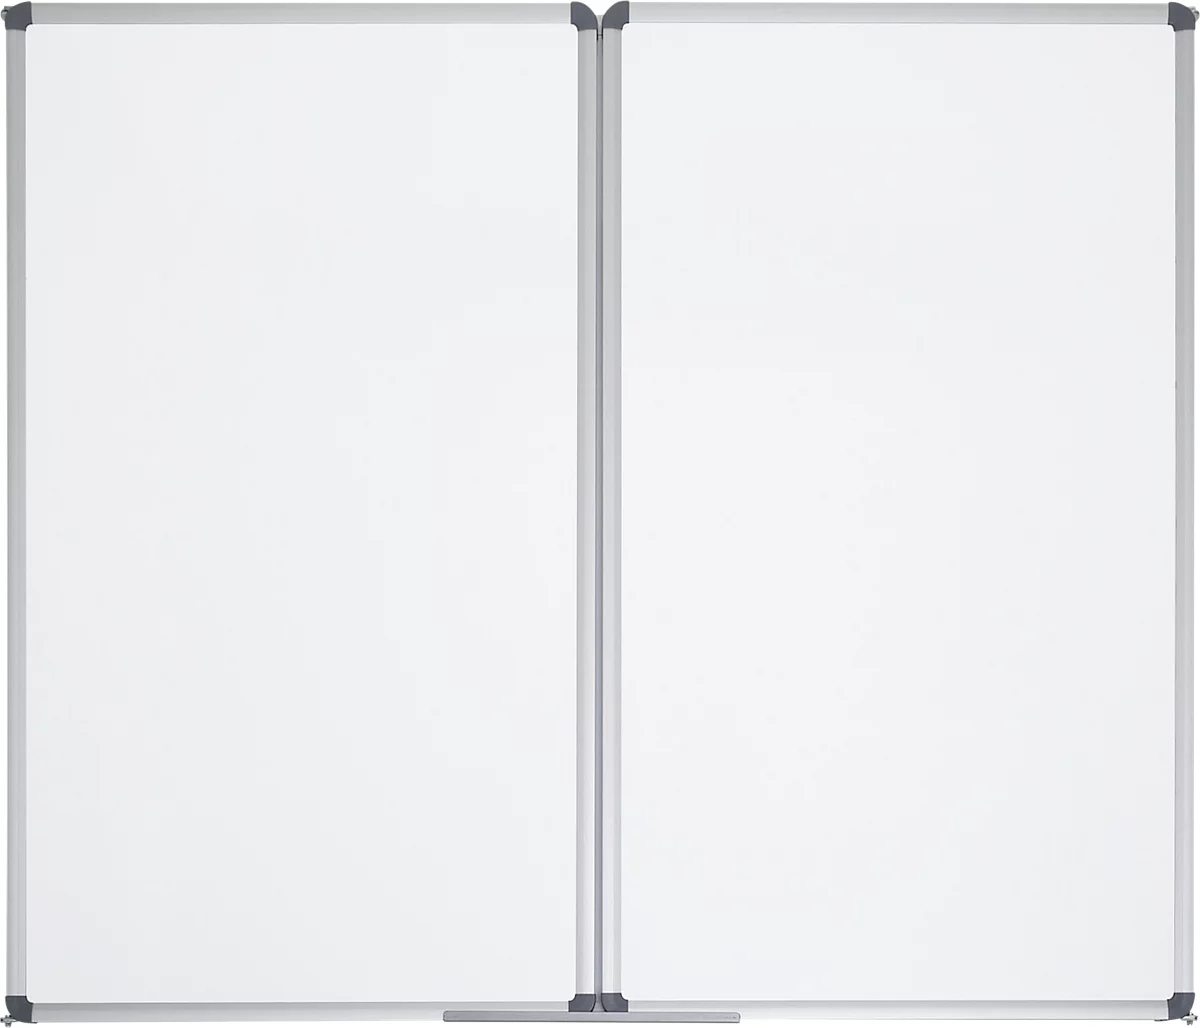 Whiteboard-Klapptafel MAULstandard, grau kunststoffbeschichtet, magnethaftend, 2 Flügel, B 1200 x H 1000 mm